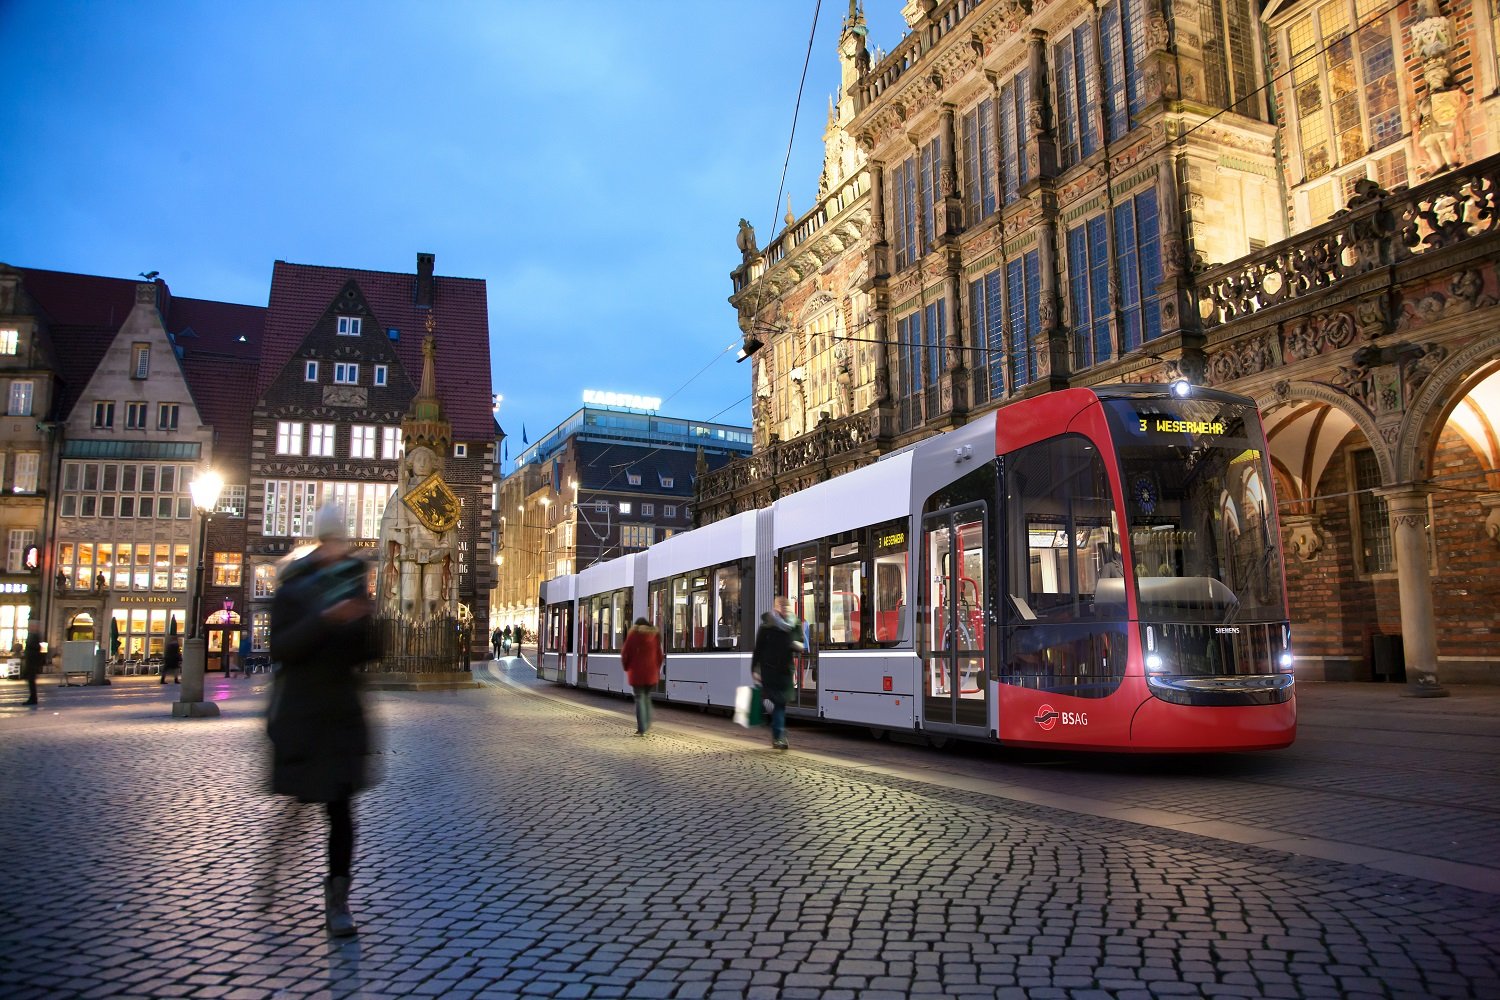 Siemens liefert zehn weitere Straßenbahnen für Bremen / Siemens delivers an additional ten trams for Bremen